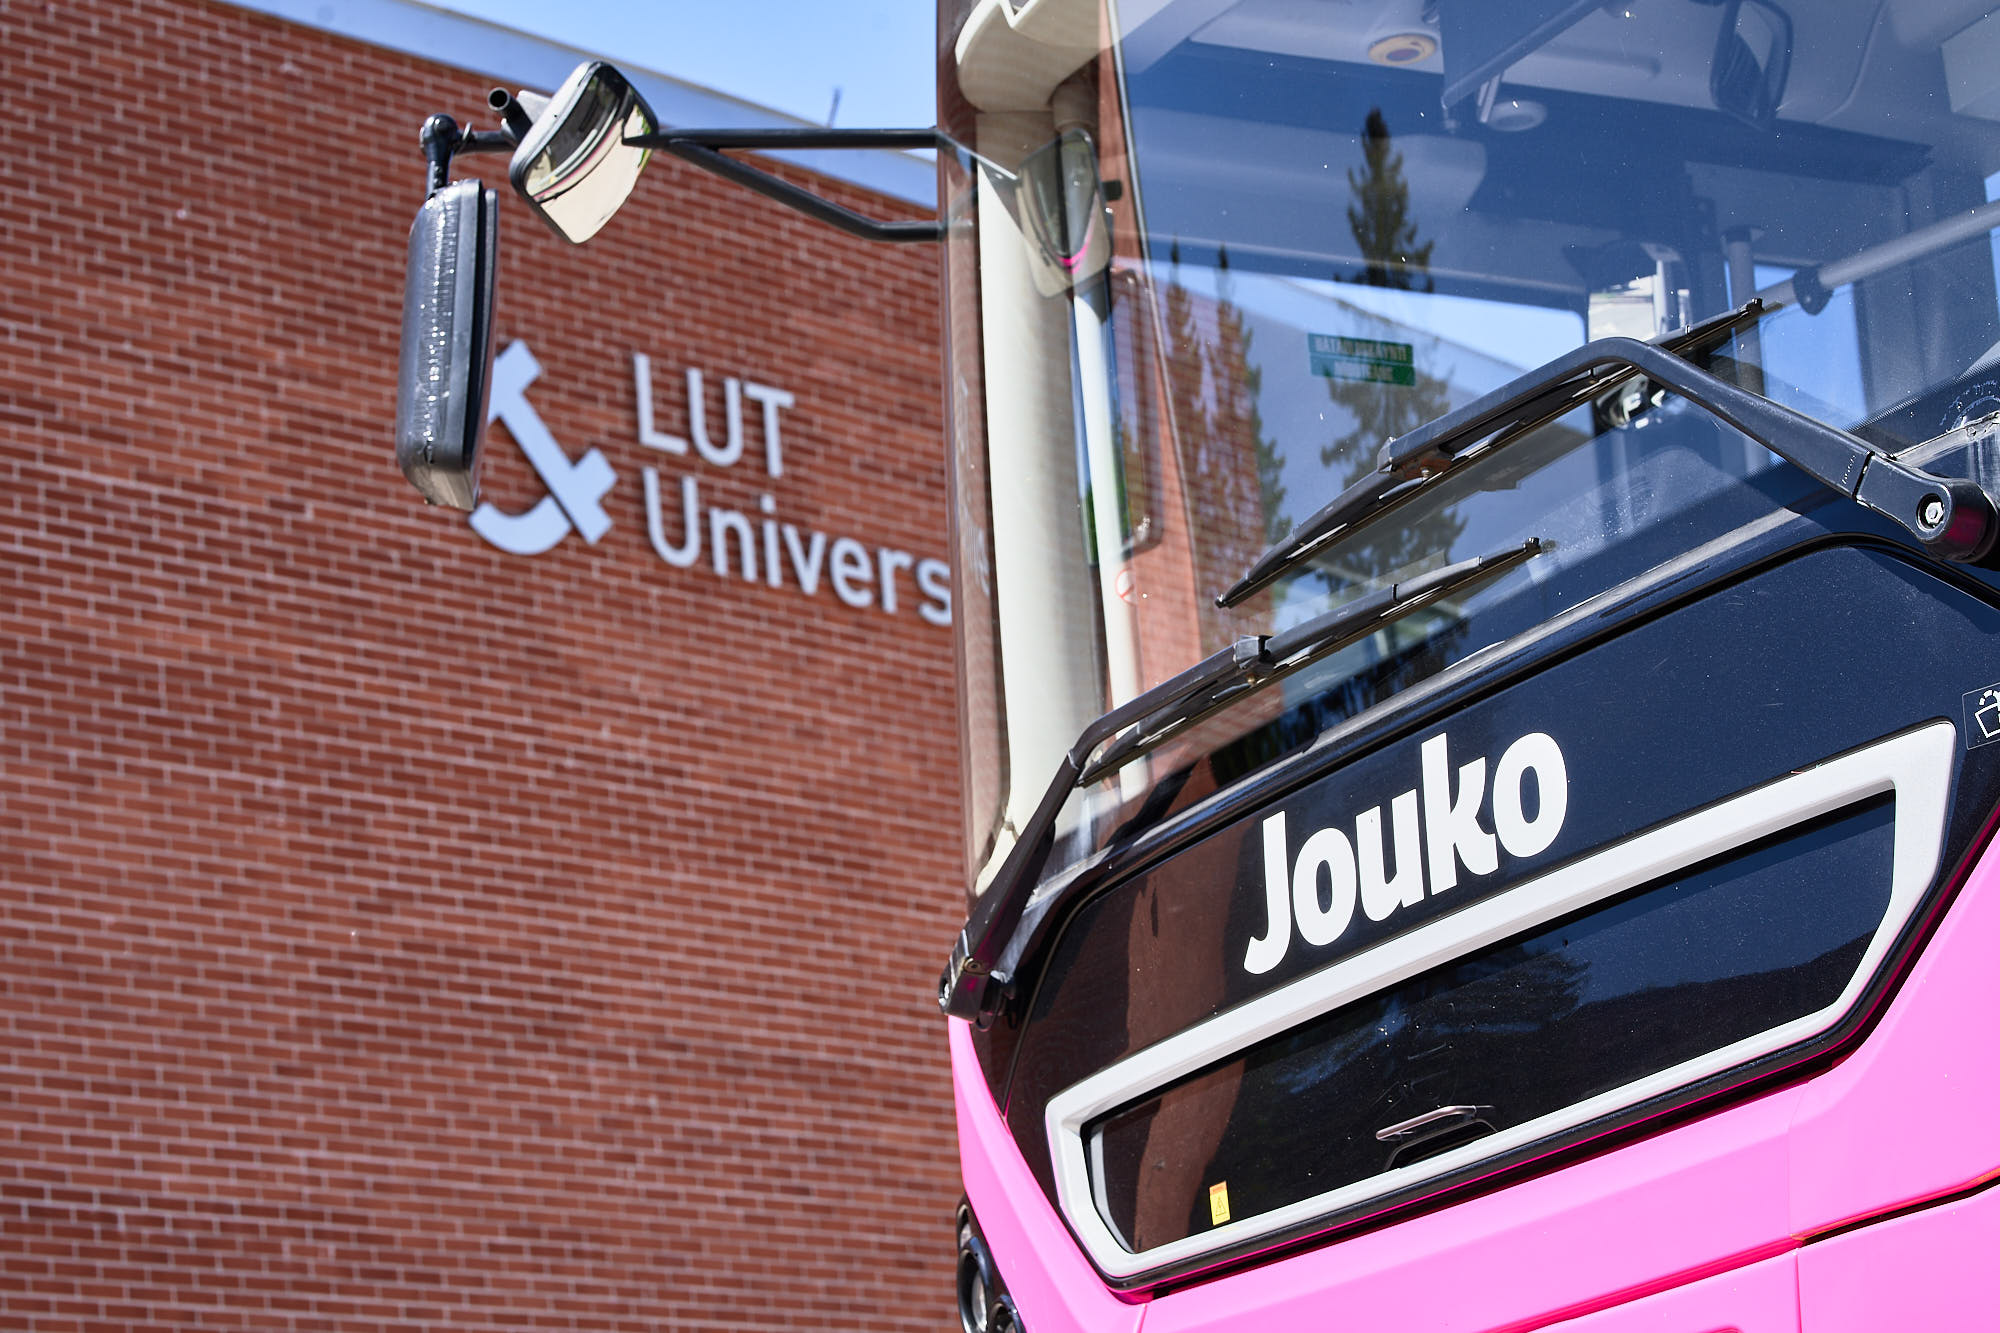 Jouko-linja-auto LUT yliopiston edustalla.